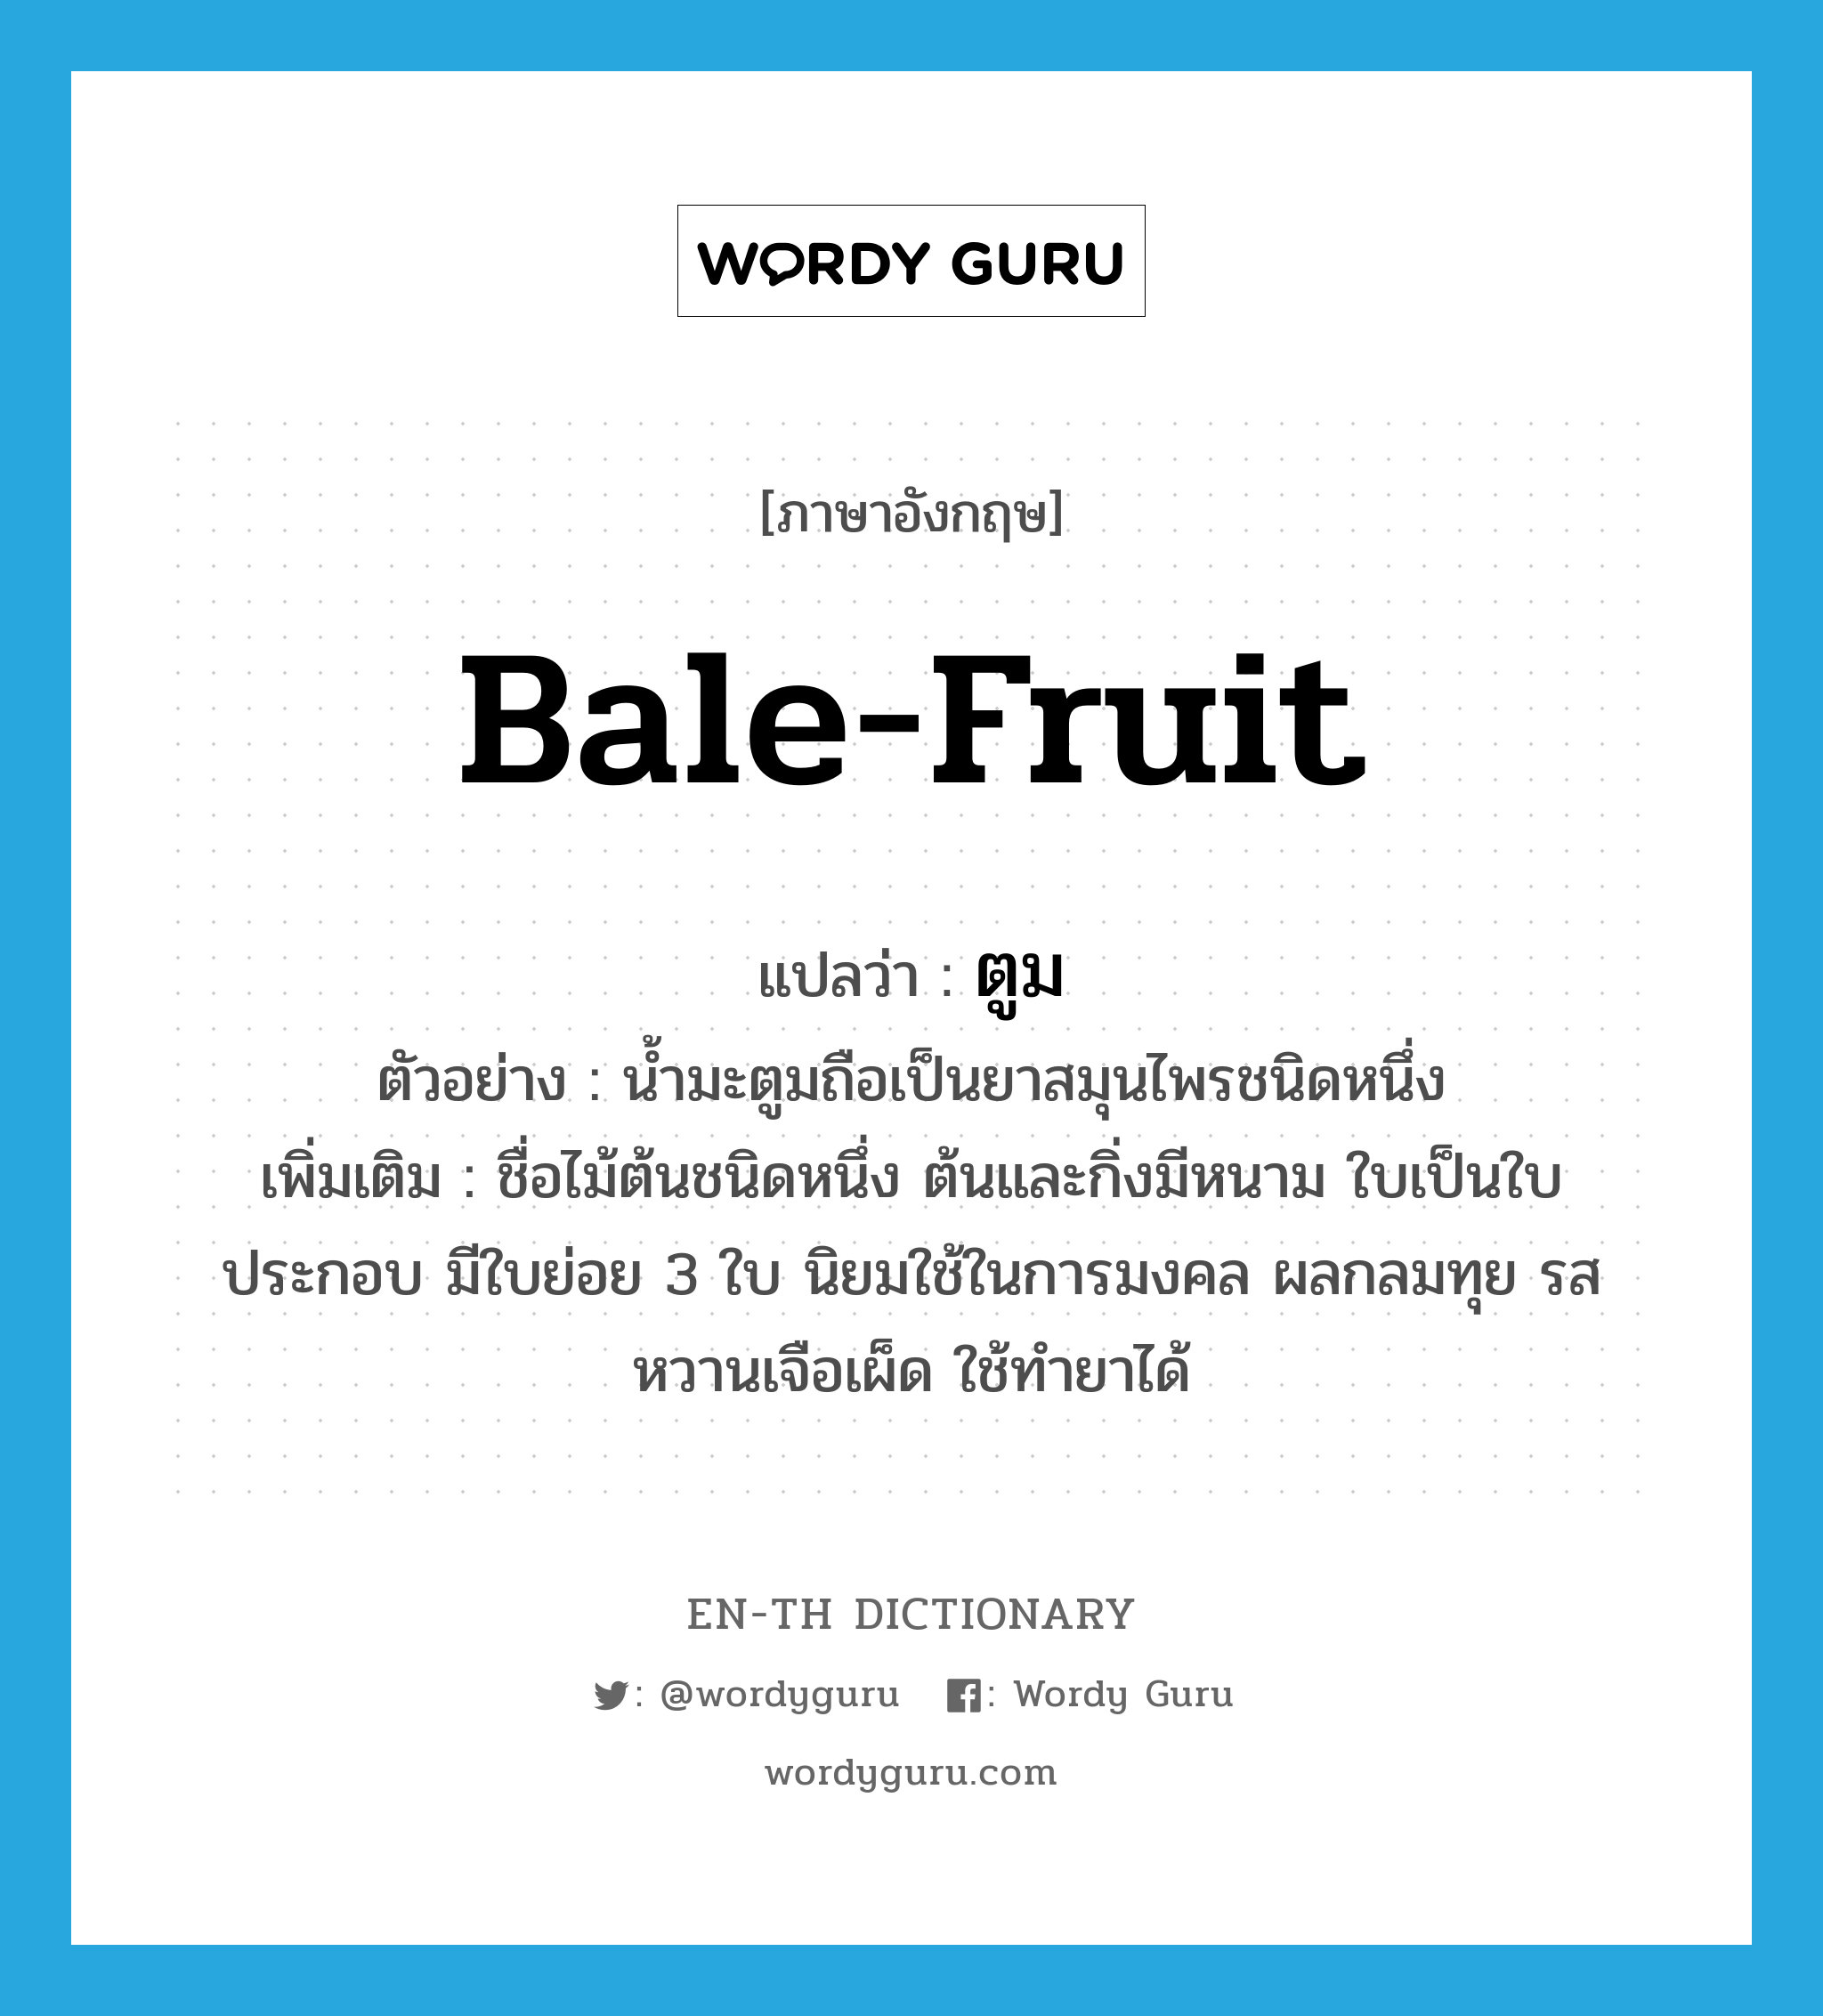 bale-fruit แปลว่า?, คำศัพท์ภาษาอังกฤษ bale-fruit แปลว่า ตูม ประเภท N ตัวอย่าง น้ำมะตูมถือเป็นยาสมุนไพรชนิดหนึ่ง เพิ่มเติม ชื่อไม้ต้นชนิดหนึ่ง ต้นและกิ่งมีหนาม ใบเป็นใบประกอบ มีใบย่อย 3 ใบ นิยมใช้ในการมงคล ผลกลมทุย รสหวานเจือเผ็ด ใช้ทำยาได้ หมวด N